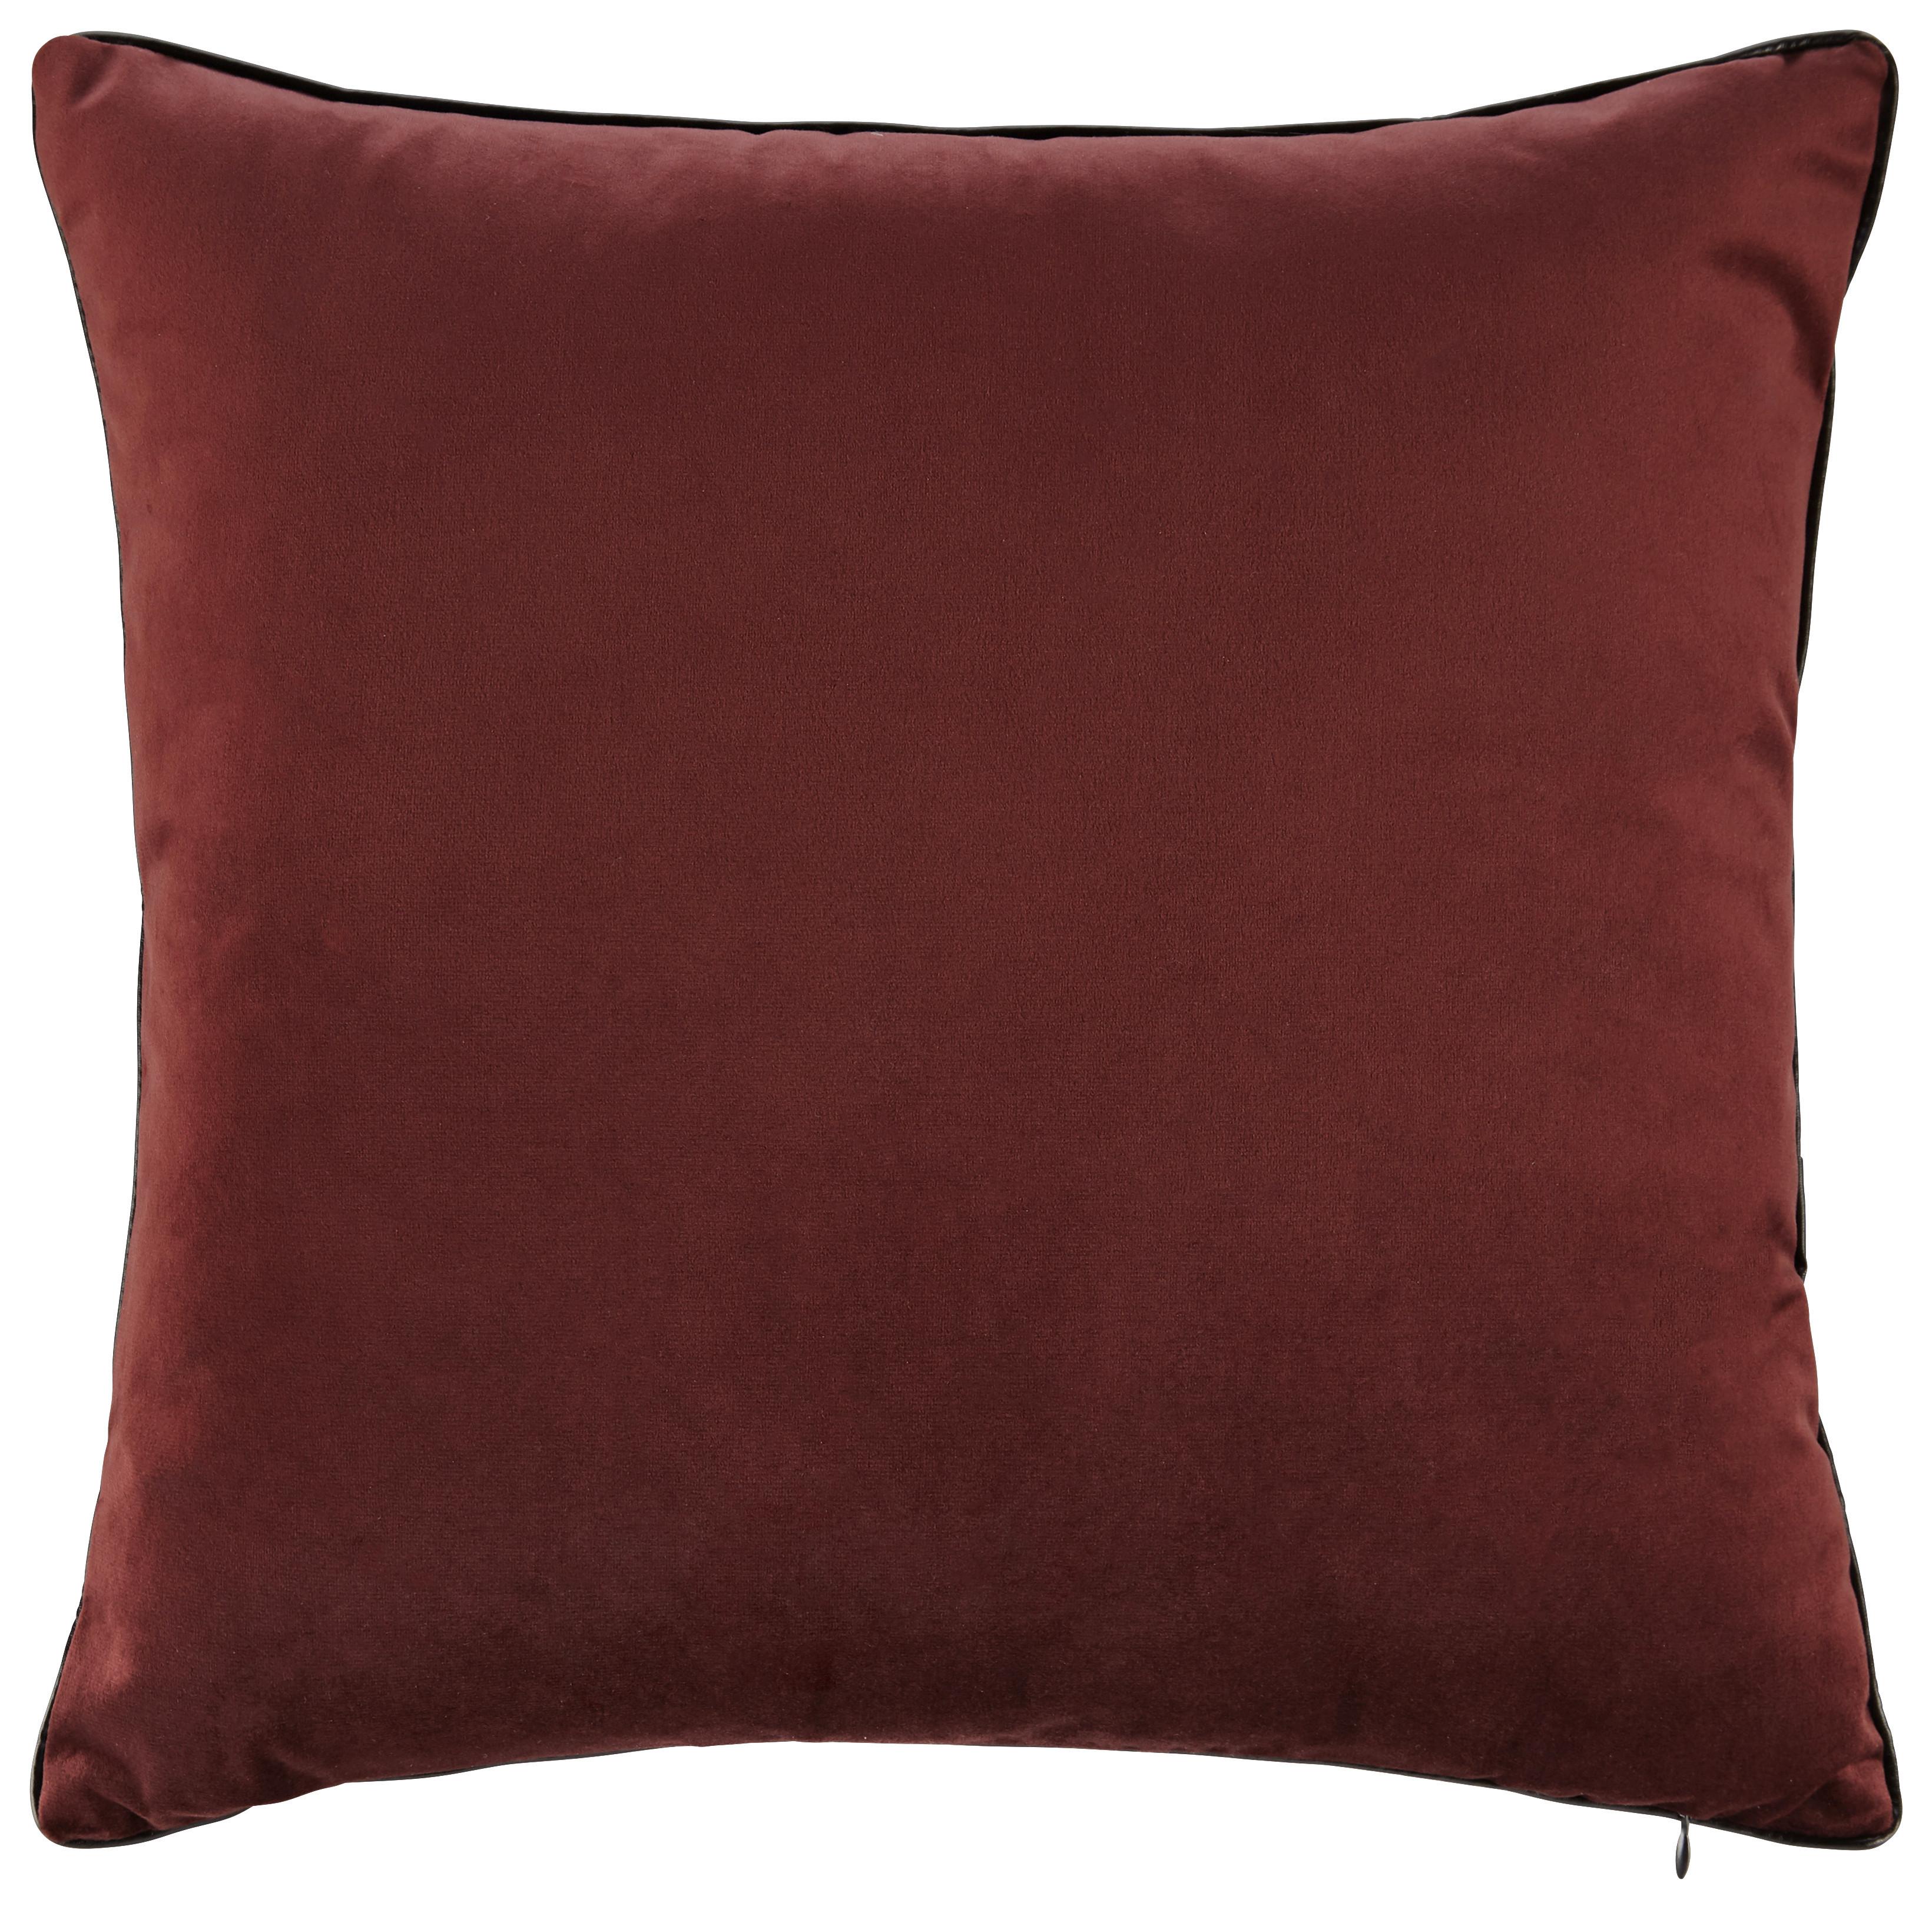 Polštář Malea Ca.45x45cm - červená, Moderní, textil (45/45cm) - Modern Living